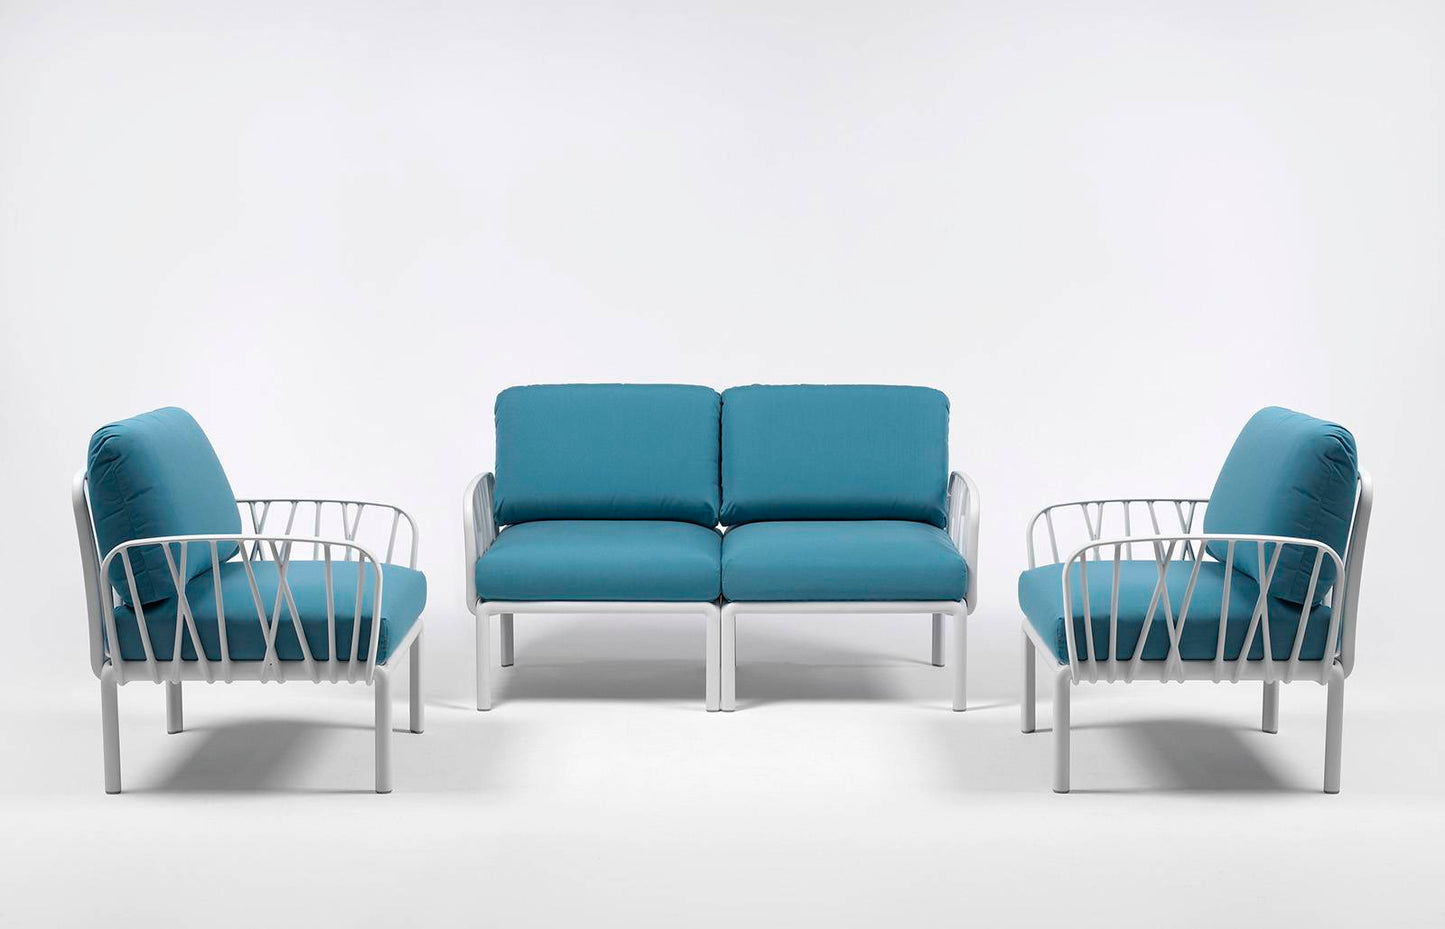 Komodo Outdoor Chair, white frame, blue cushion